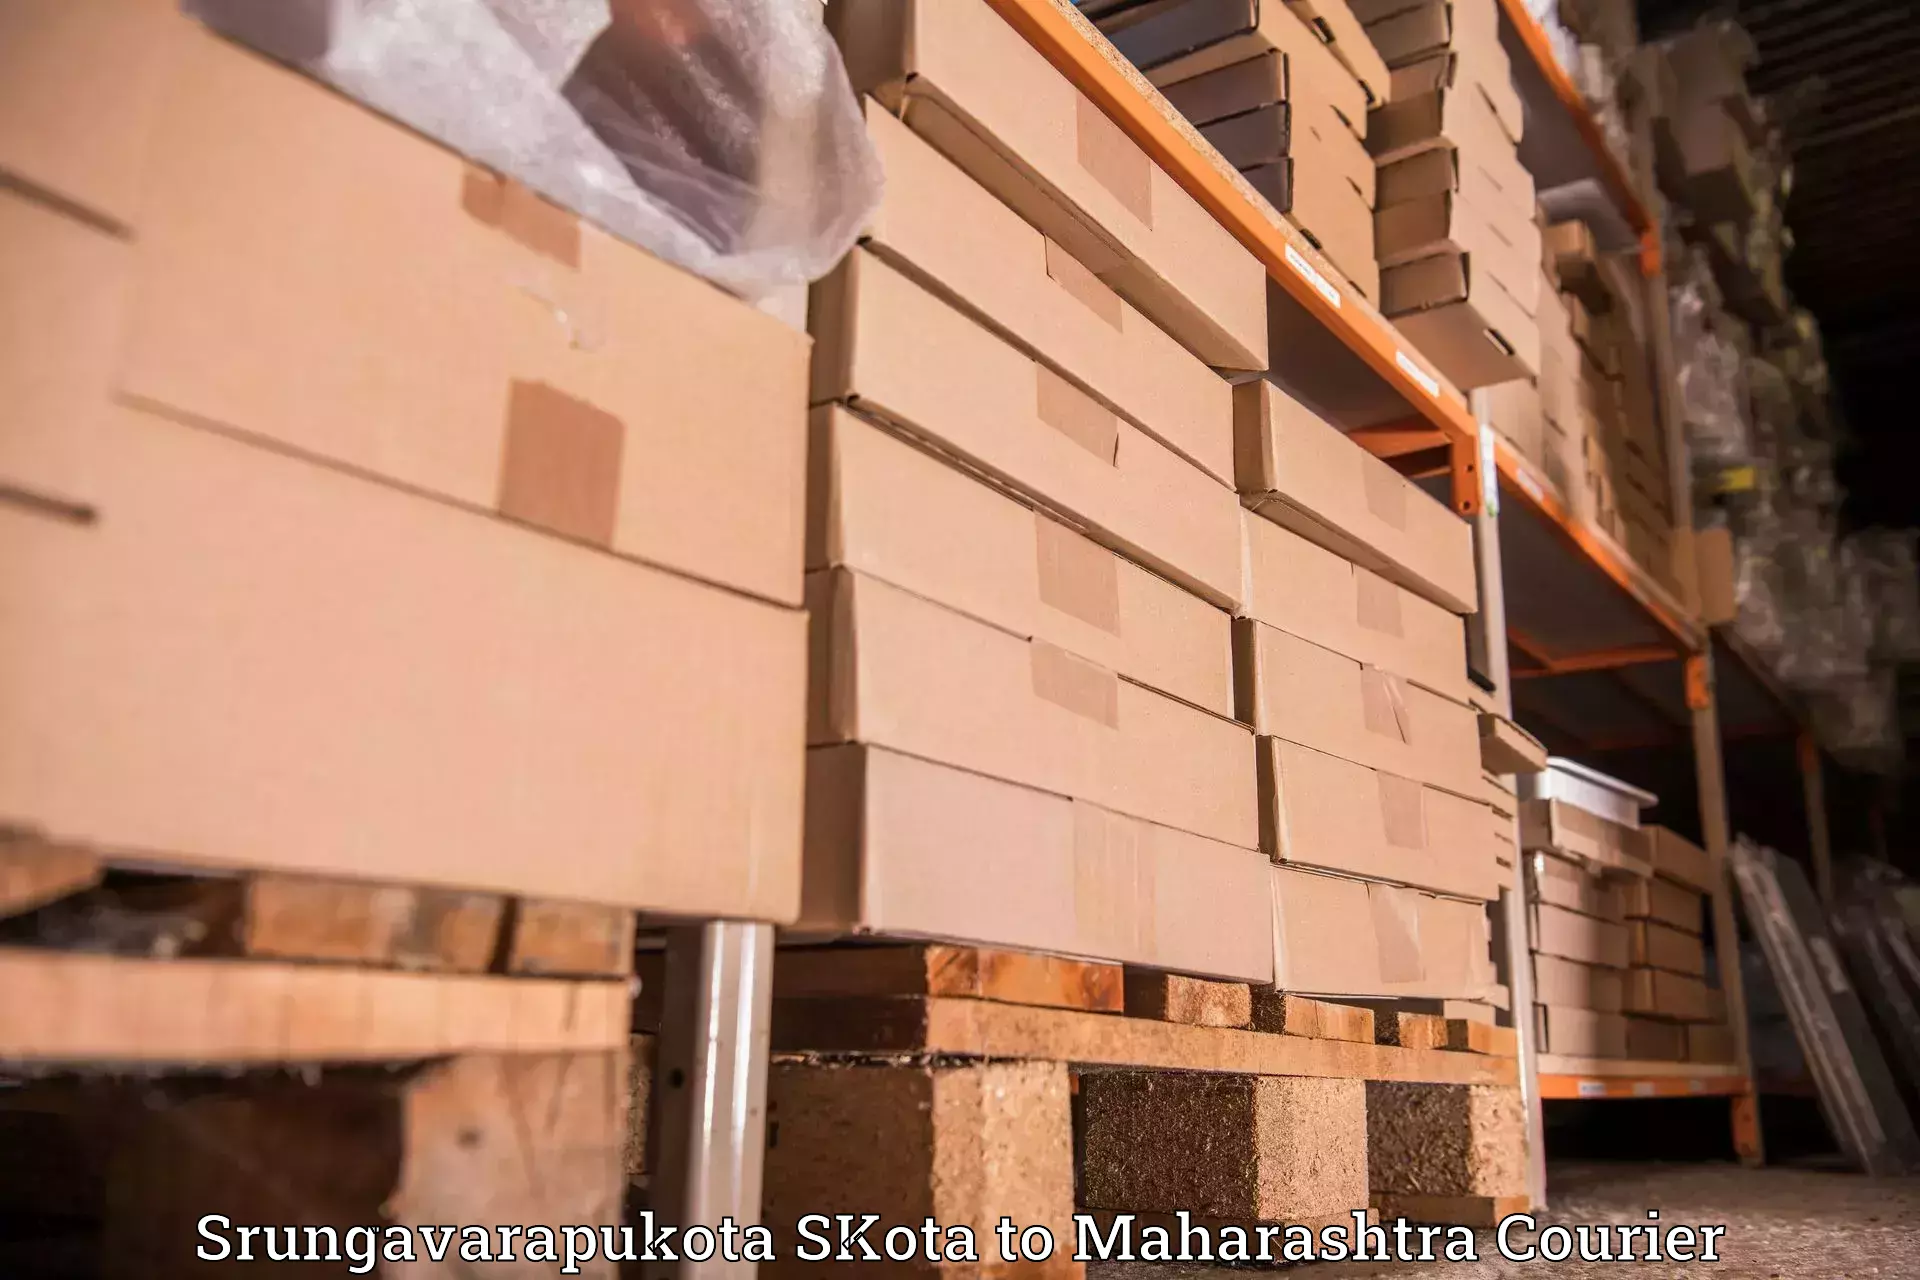 Package delivery network Srungavarapukota SKota to IIIT Nagpur